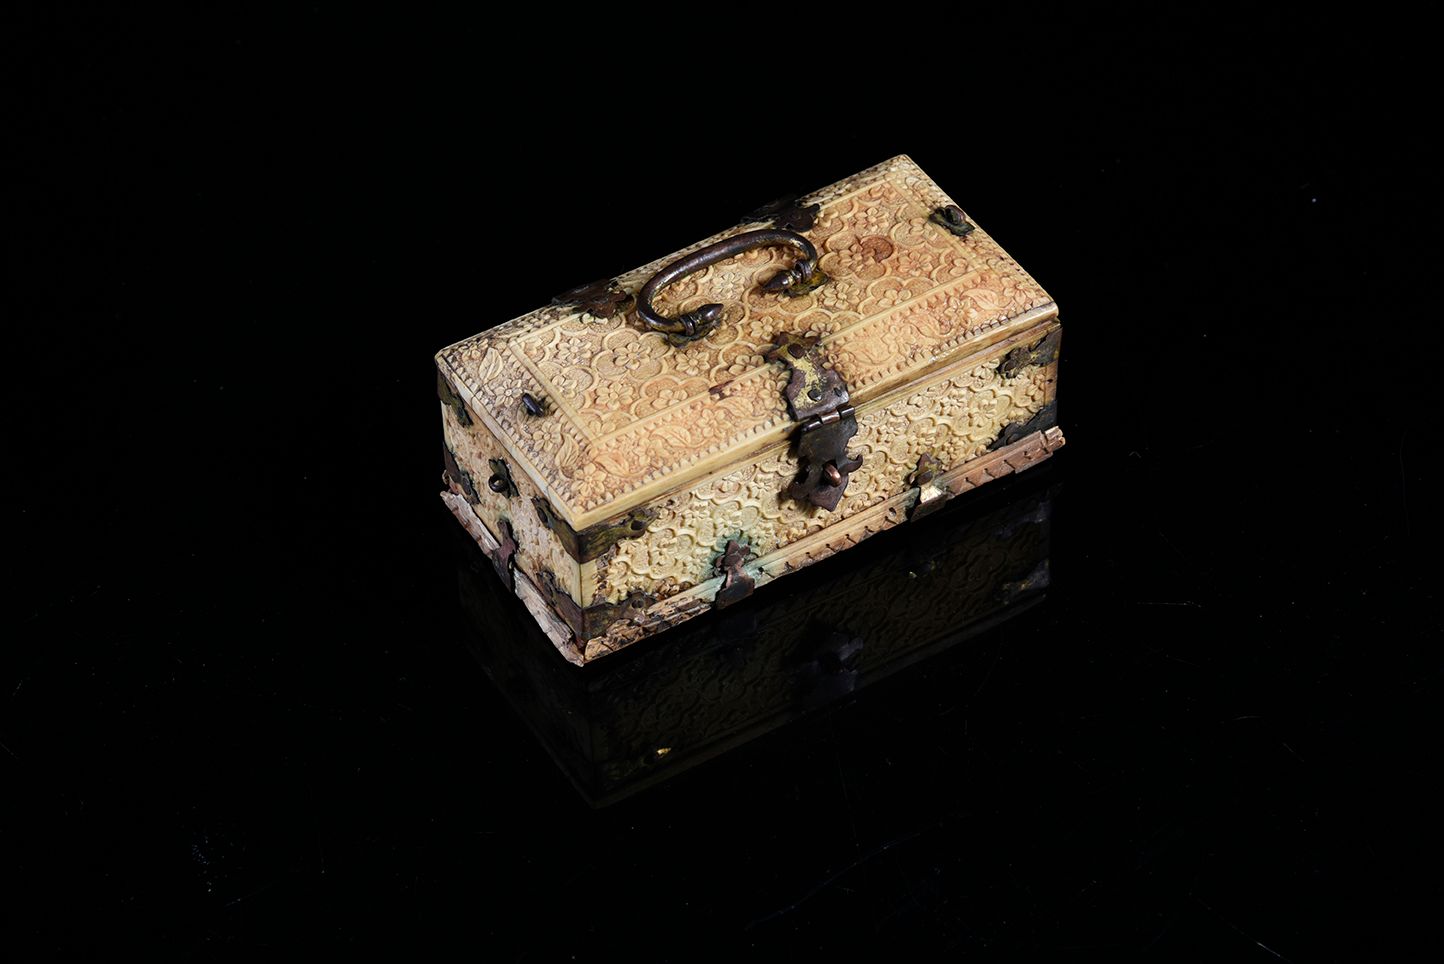 Null 莫卧儿小香水盒，象牙精雕细琢，装饰有花朵，手柄和铰链为青铜金属，切割成三叶草形状。
古老的北印度作品。
高4.5厘米。11 x 5 cm